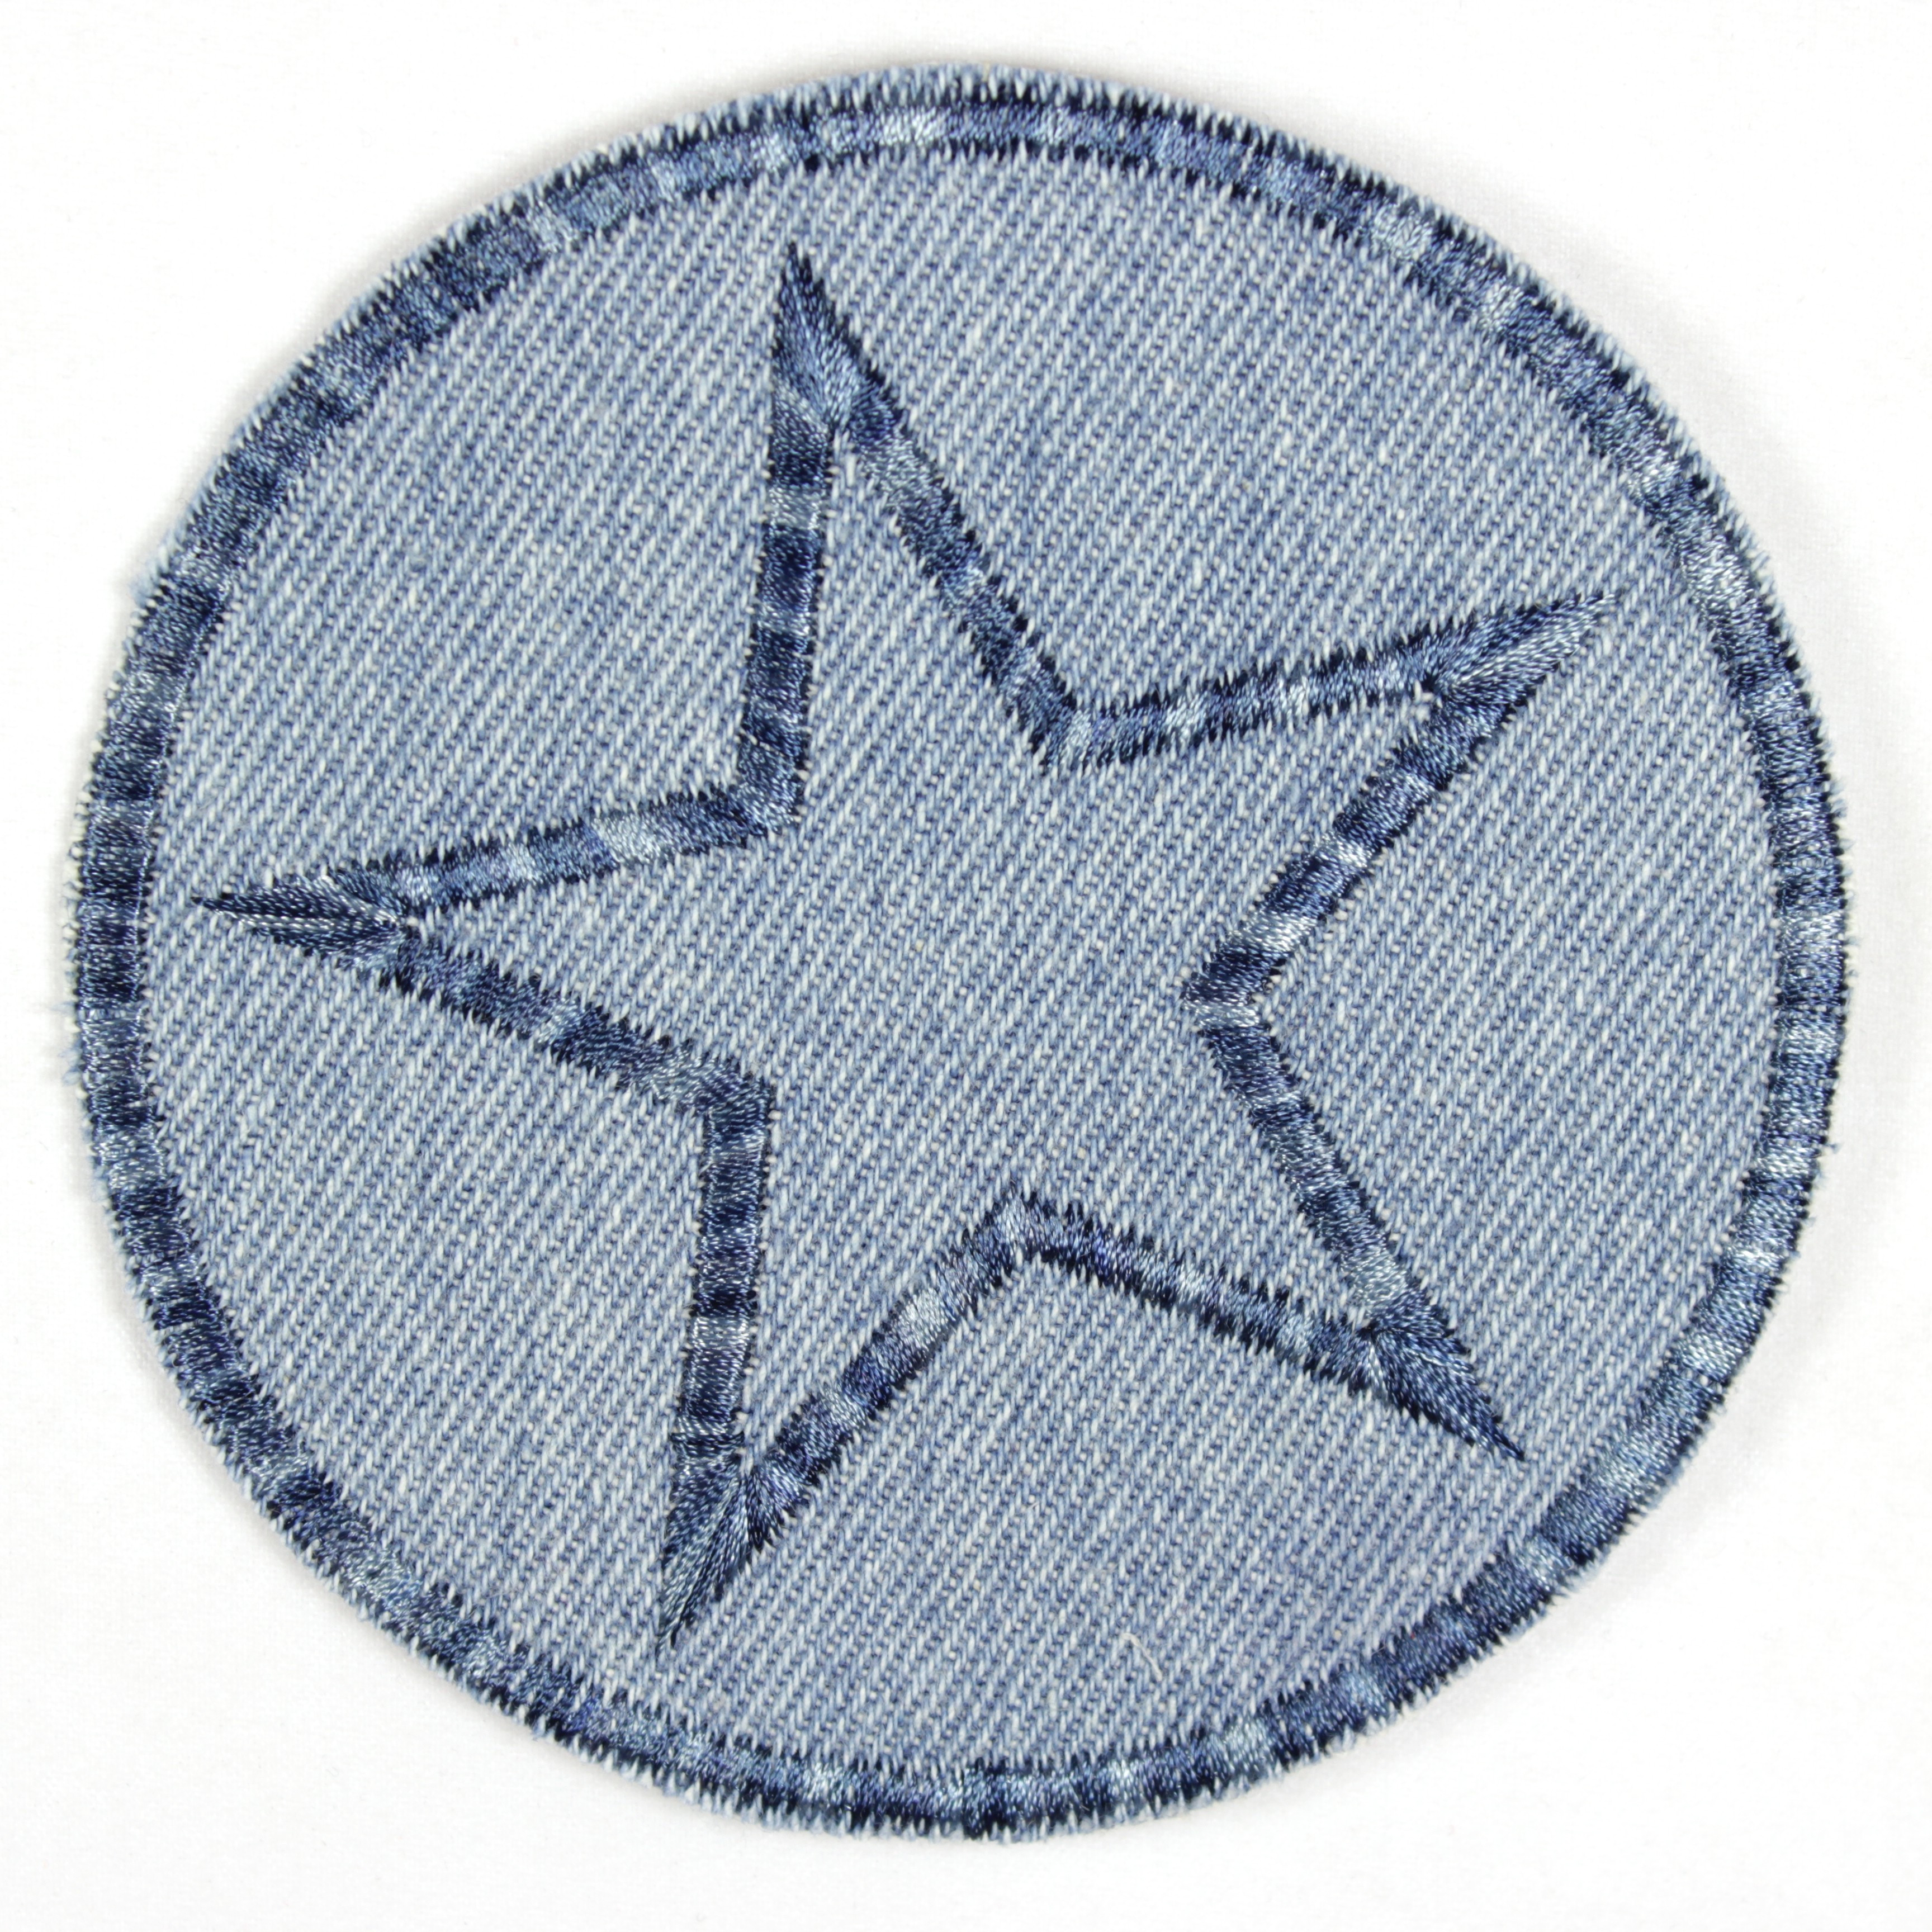 Flicken rund mit Stern blau Jeansflicken hellblau zum aufbügeln Multicolor